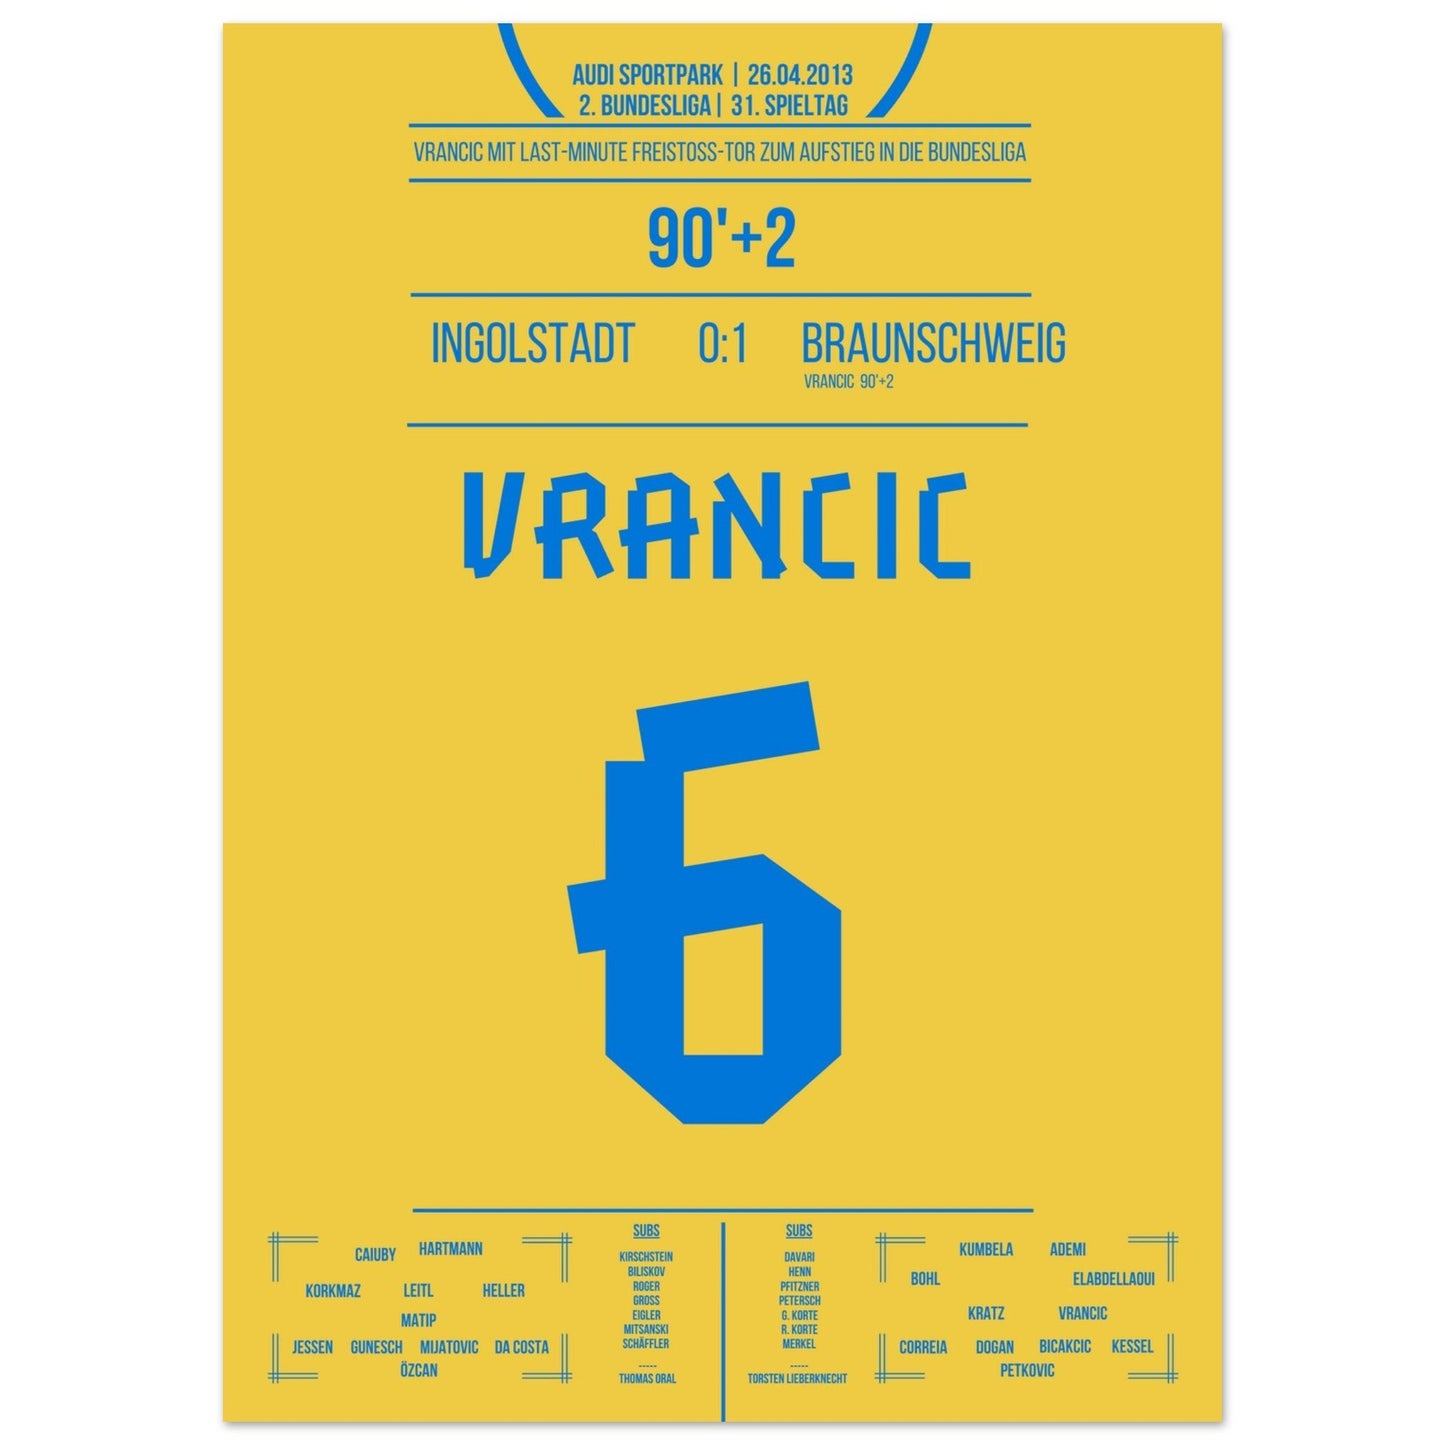 Vrancic's Freistoss-Treffer zum Bundesliga-Aufstieg 2013